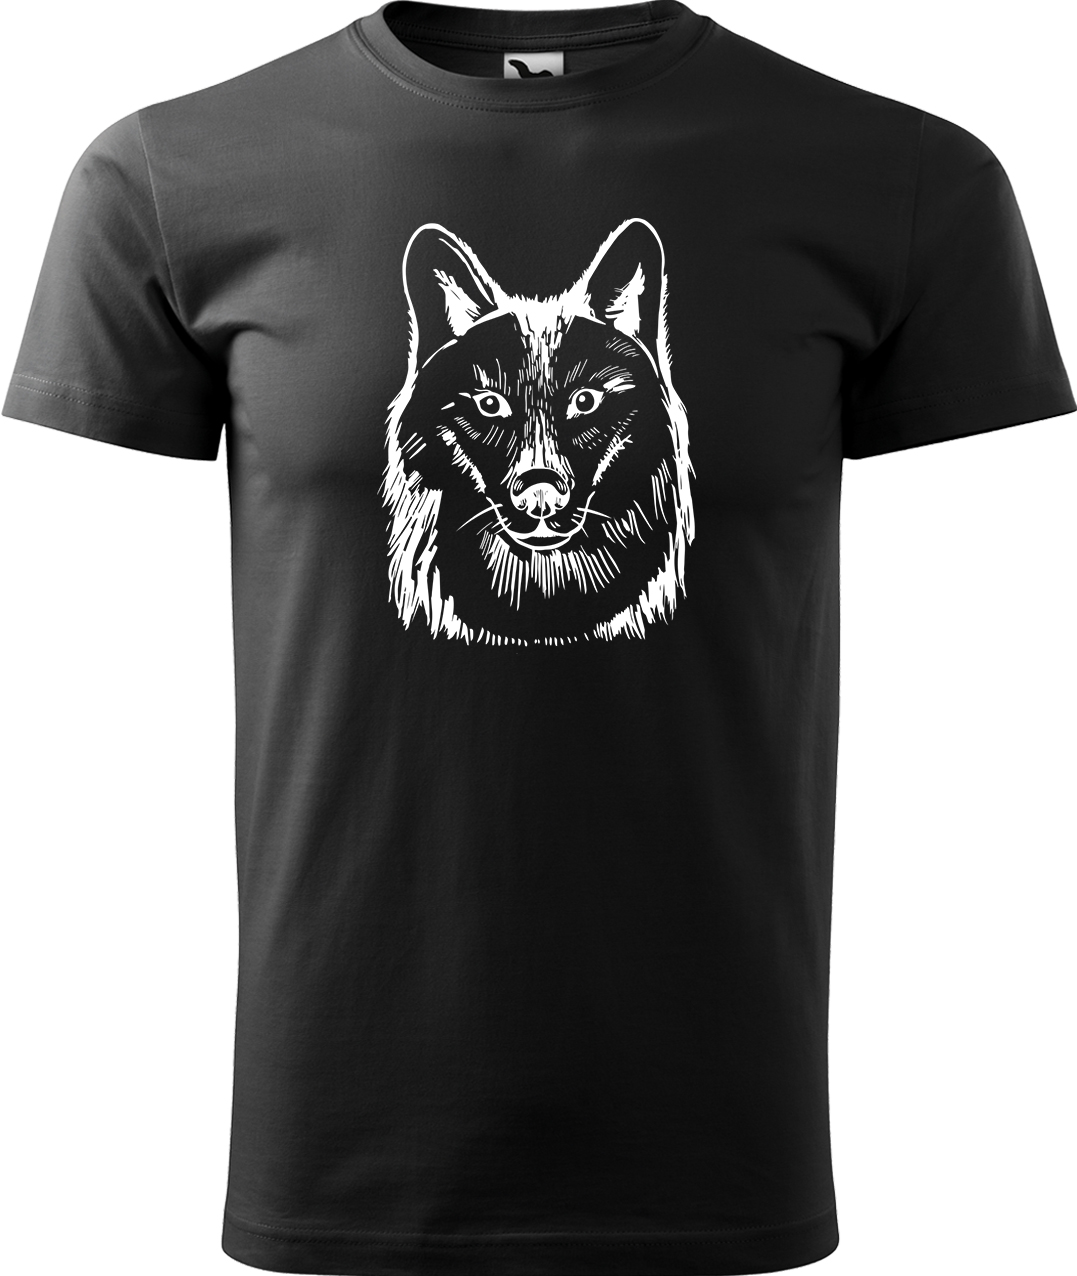 Pánské tričko s vlkem - Kresba vlka Velikost: XL, Barva: Černá (01), Střih: pánský